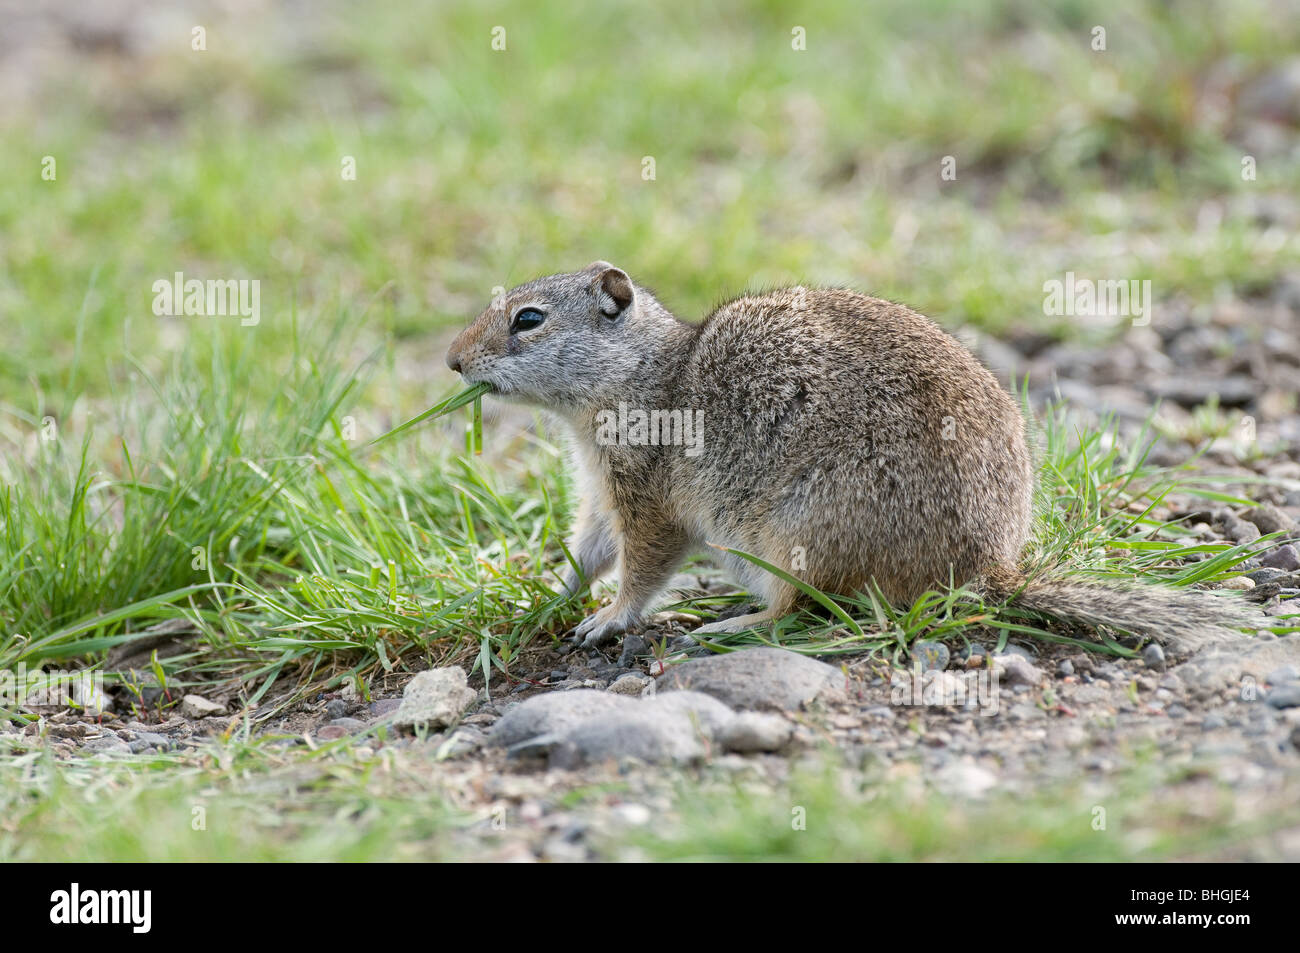 Columbian Ground Squirrel (Urocitellus columbianus, Spermophilus columbianus) eating grass. Stock Photo